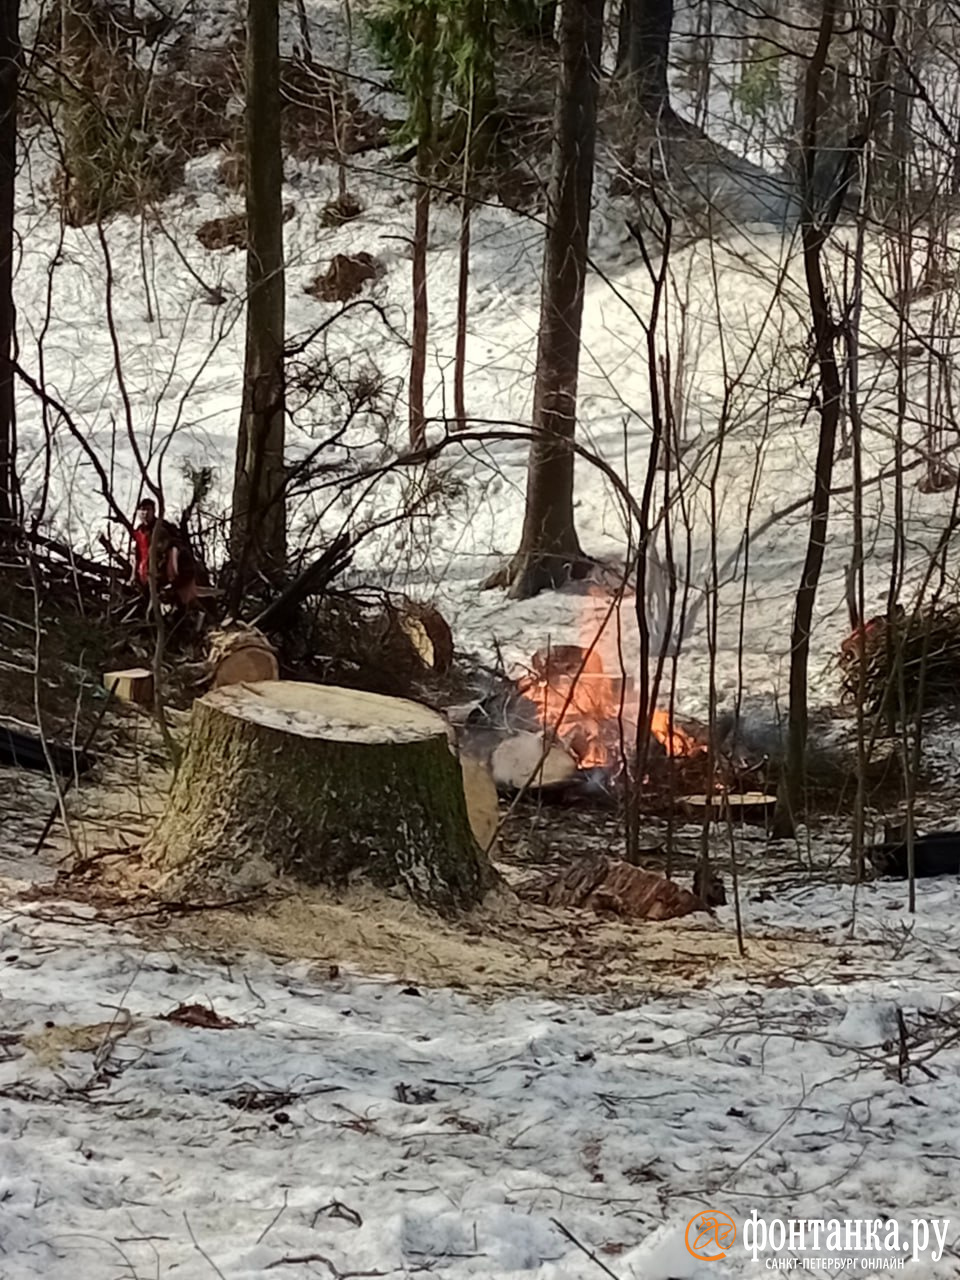 Вырубка деревьев и кострище «среди вековых елей» в Шуваловском парке насторожили петербуржцев